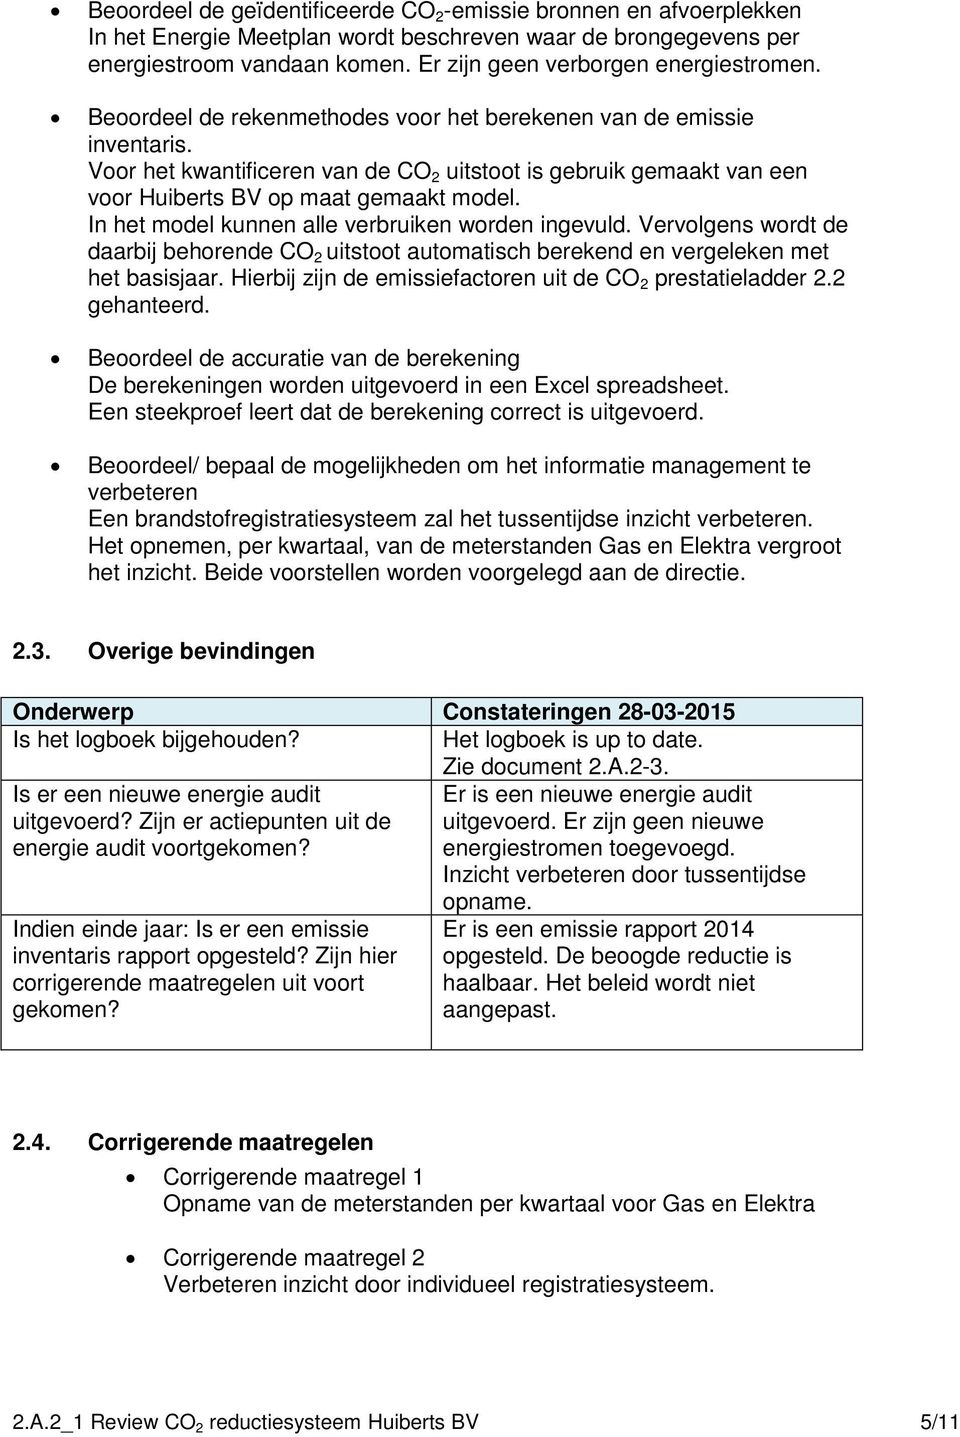 Voor het kwantificeren van de CO 2 uitstoot is gebruik gemaakt van een voor Huiberts BV op maat gemaakt model. In het model kunnen alle verbruiken worden ingevuld.